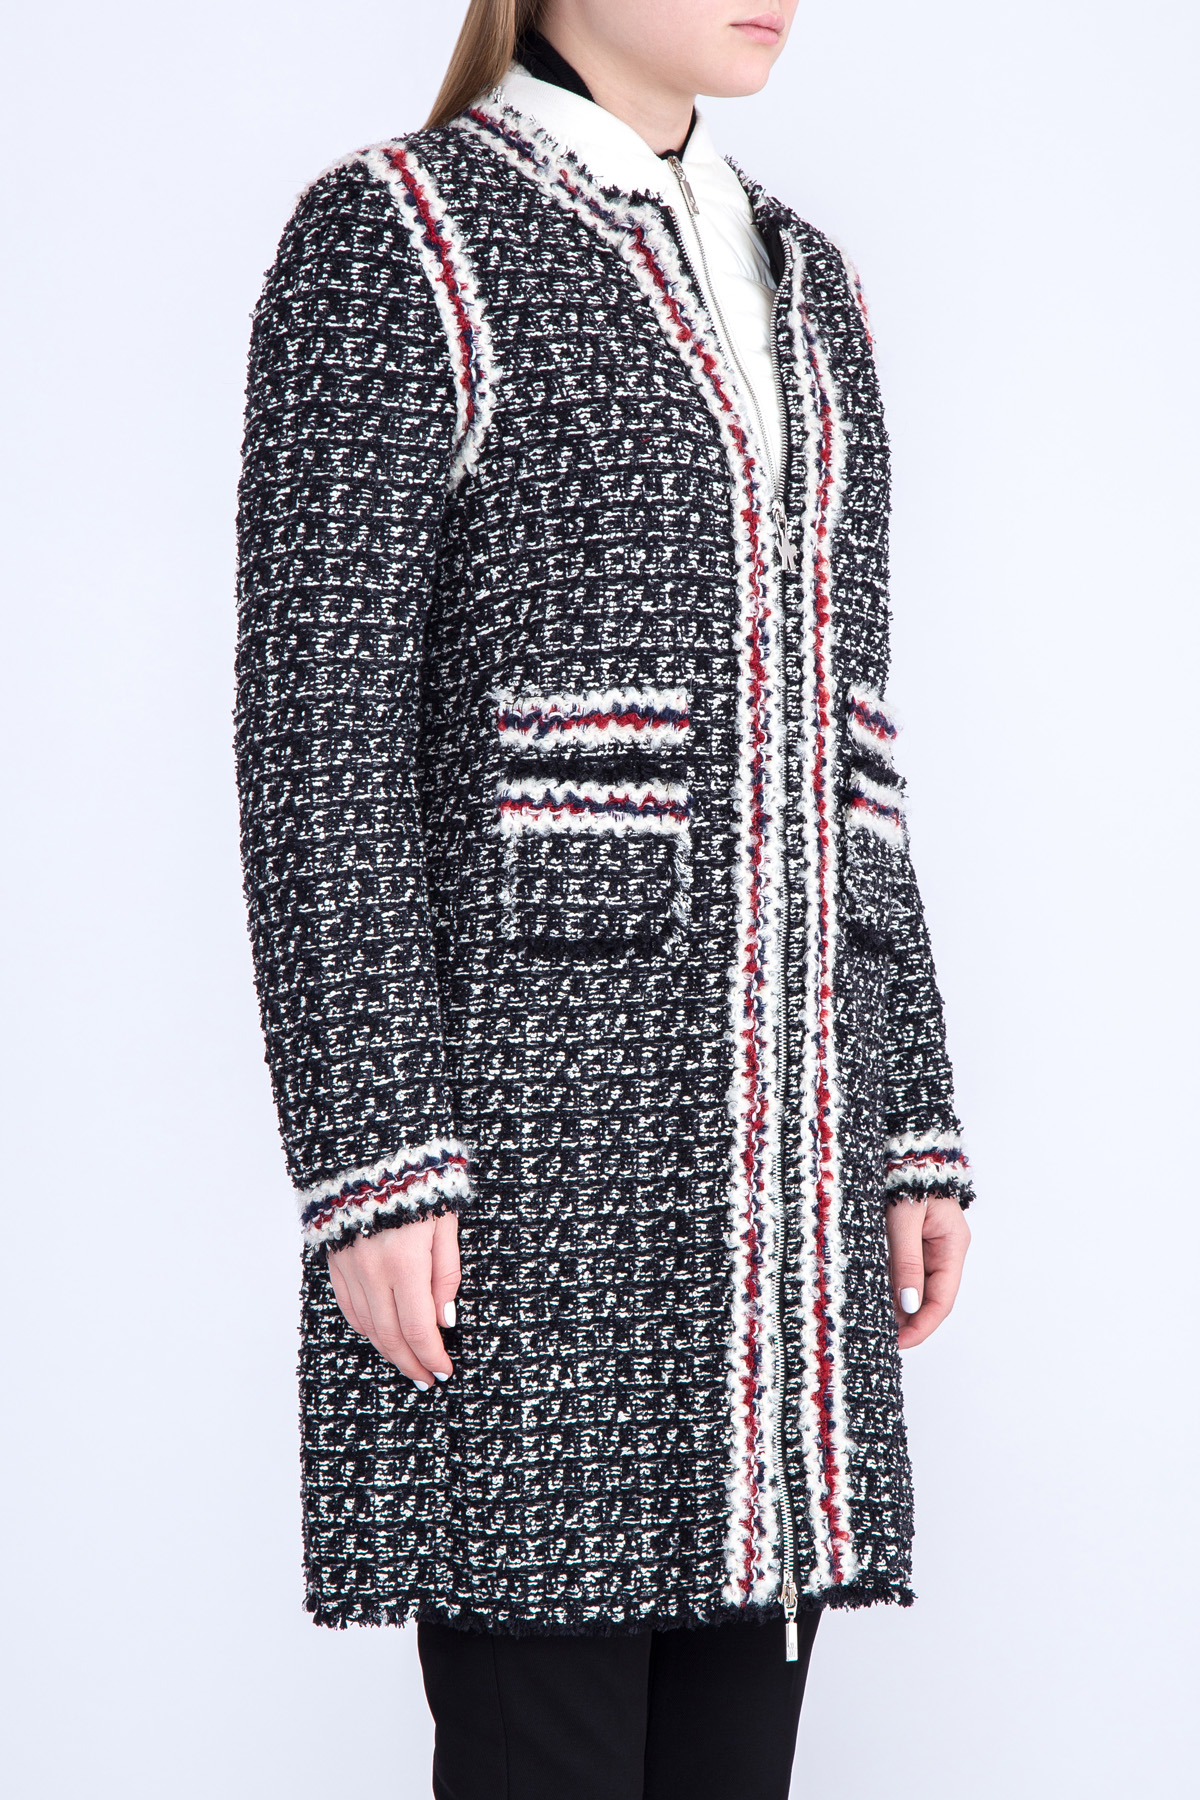 Пальто «Ontario» из ткани букле с внутренней ультра-легкой курткой MONCLER, цвет черно-белый, размер 40 - фото 3